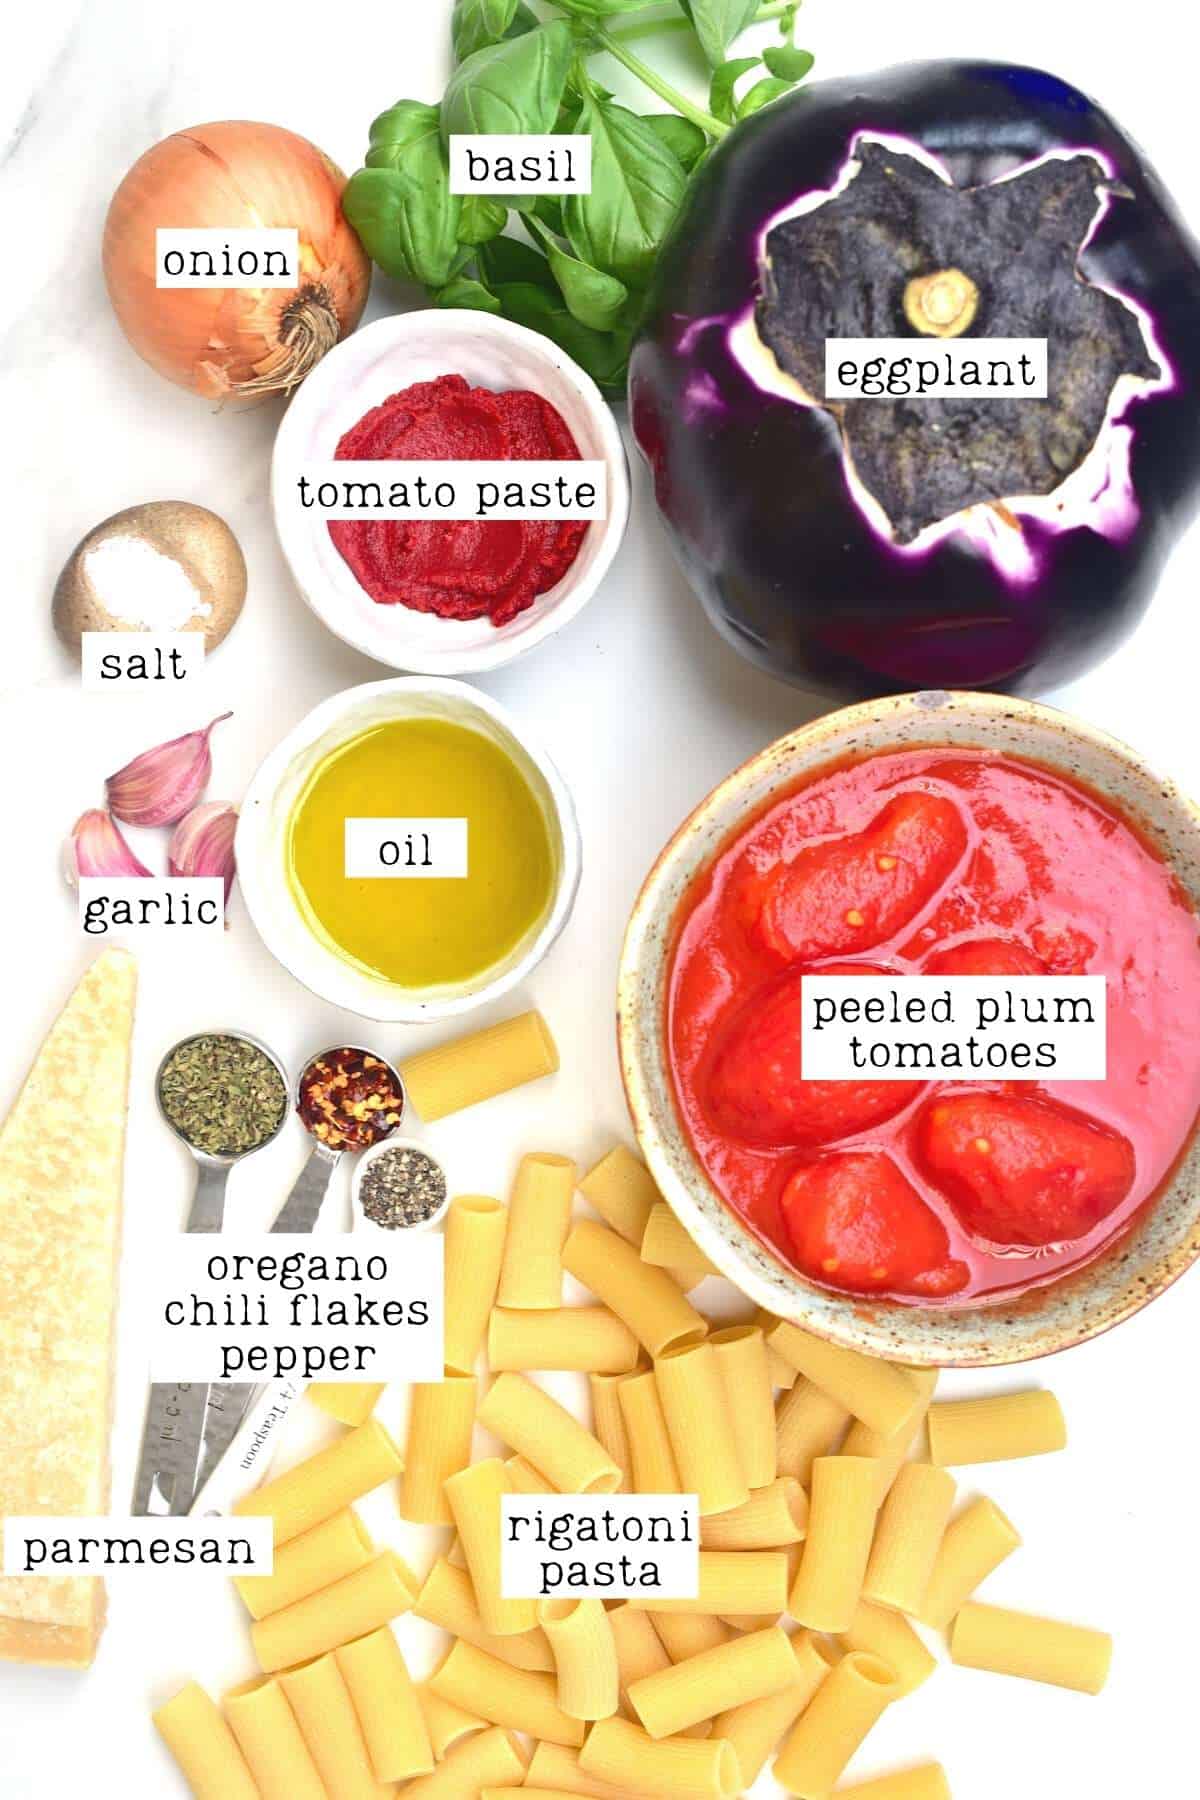 Ingredients for eggplant tomato pasta